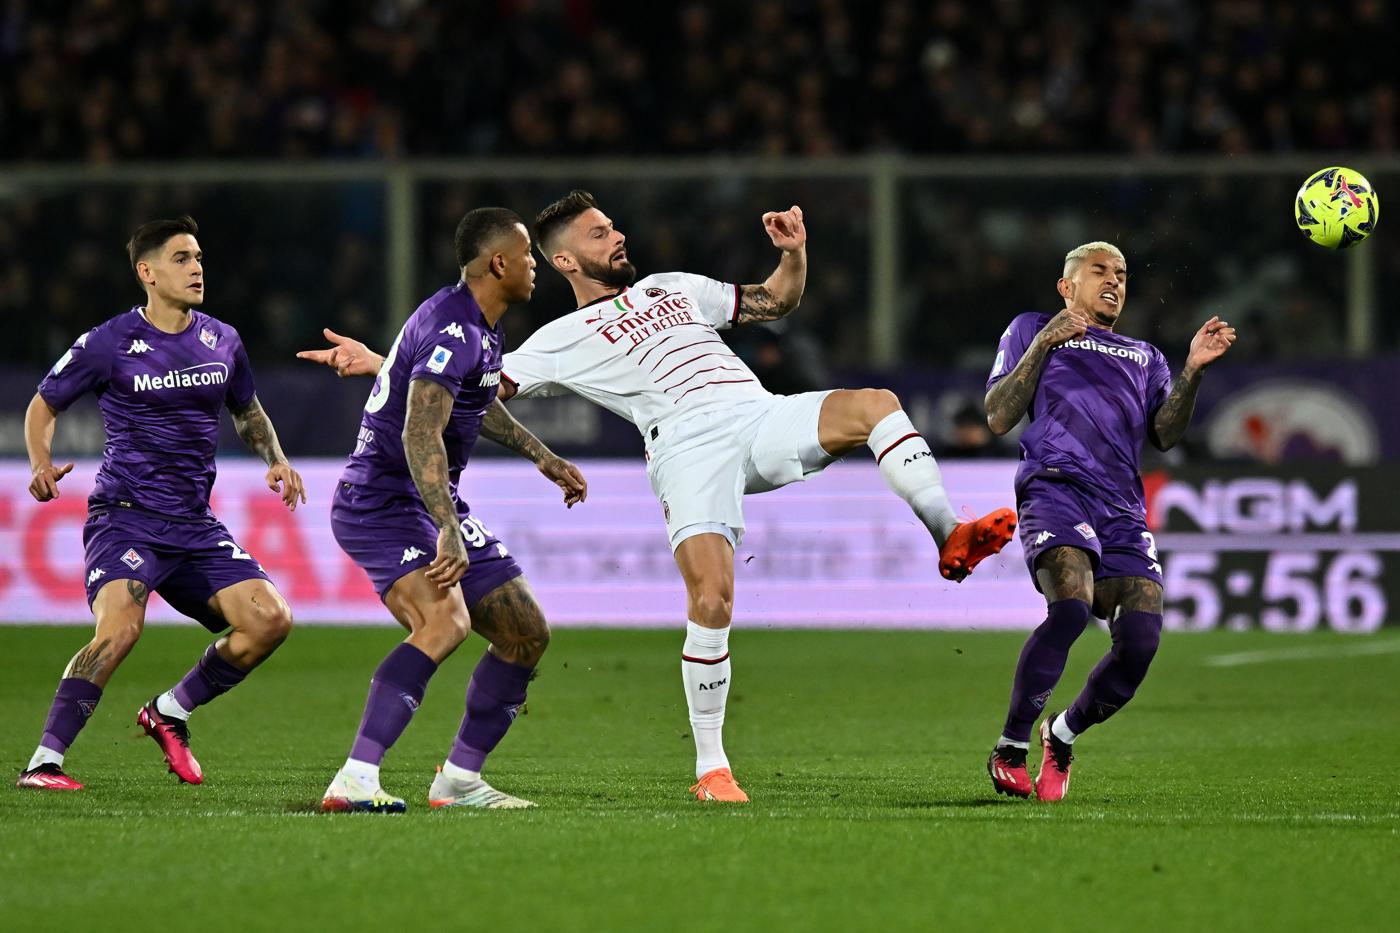 Fiorentina vs Milan - 2-1. Mistrzostwa Włoch, 25. runda. Recenzja meczu, statystyki.